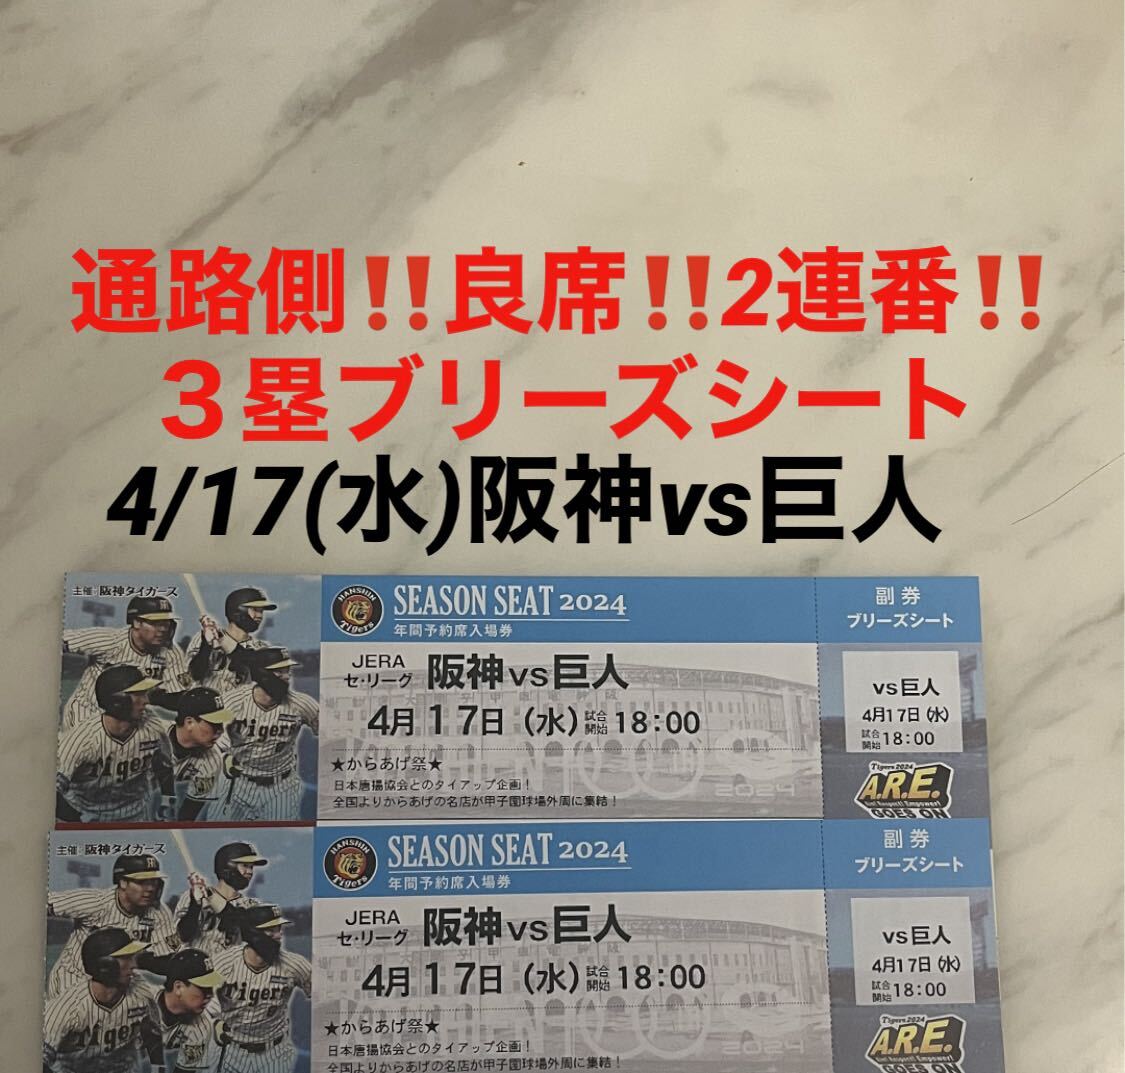 通路側！良席！2連番！4/17(水)阪神vs巨人★3塁ブリーズシート 甲子園球場★の画像1